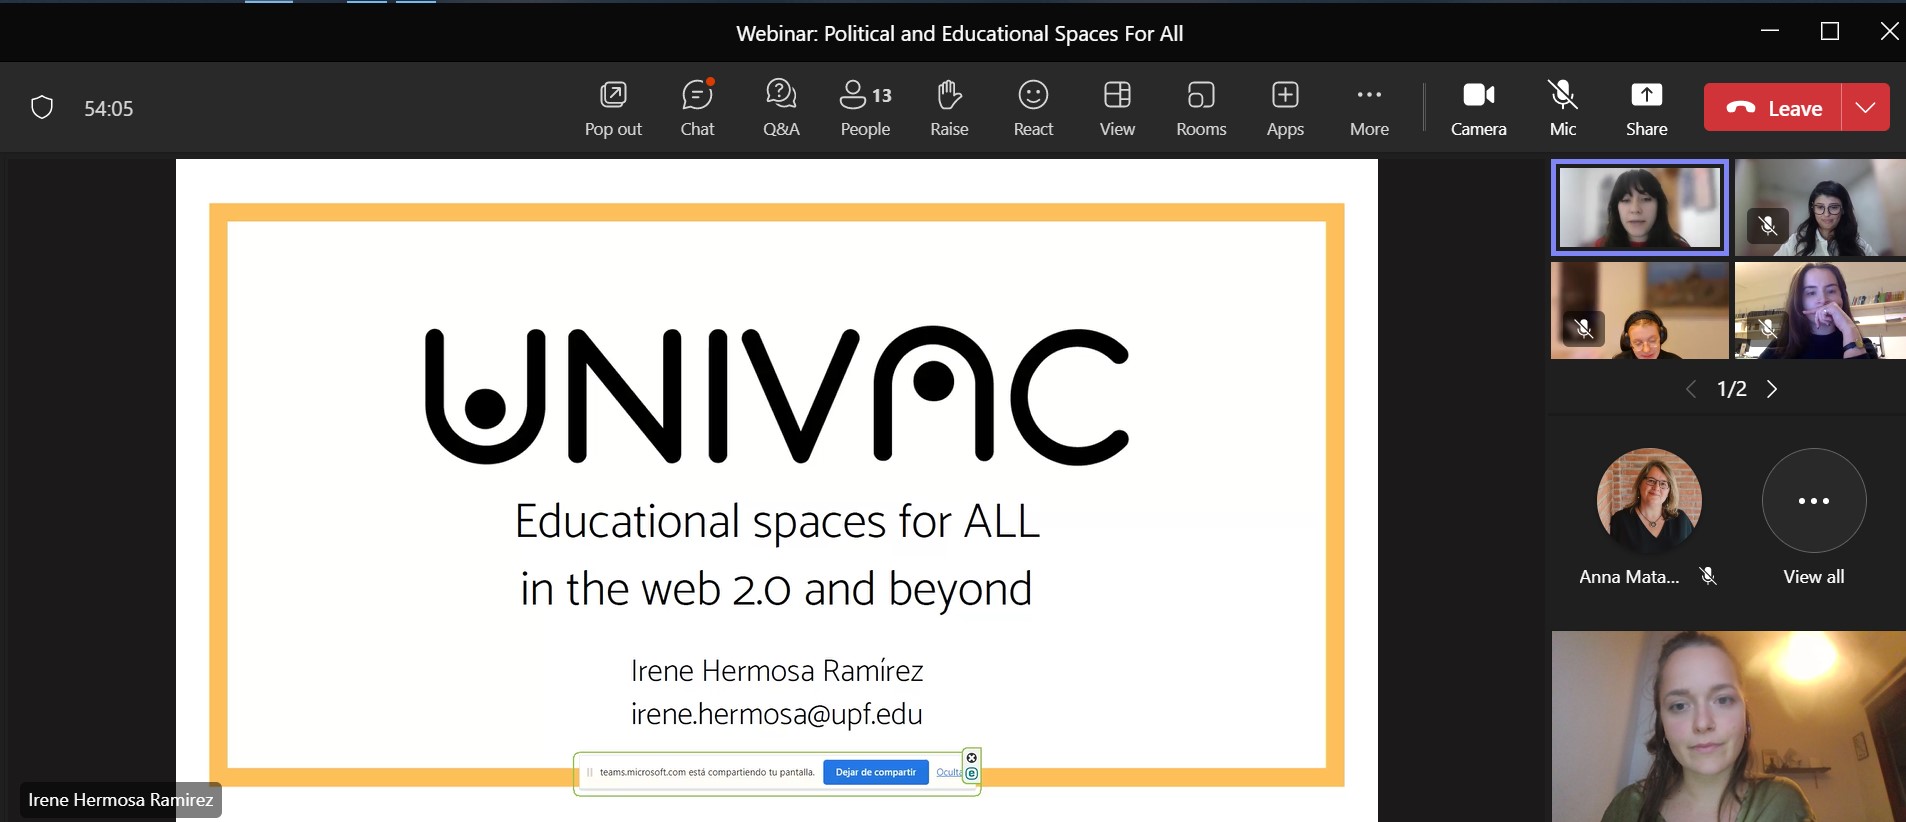 Captura del webinario con la presentación de Irene Hermosa: UNIVAC. Educational spaces for ALL in the web 2.0 and beyond